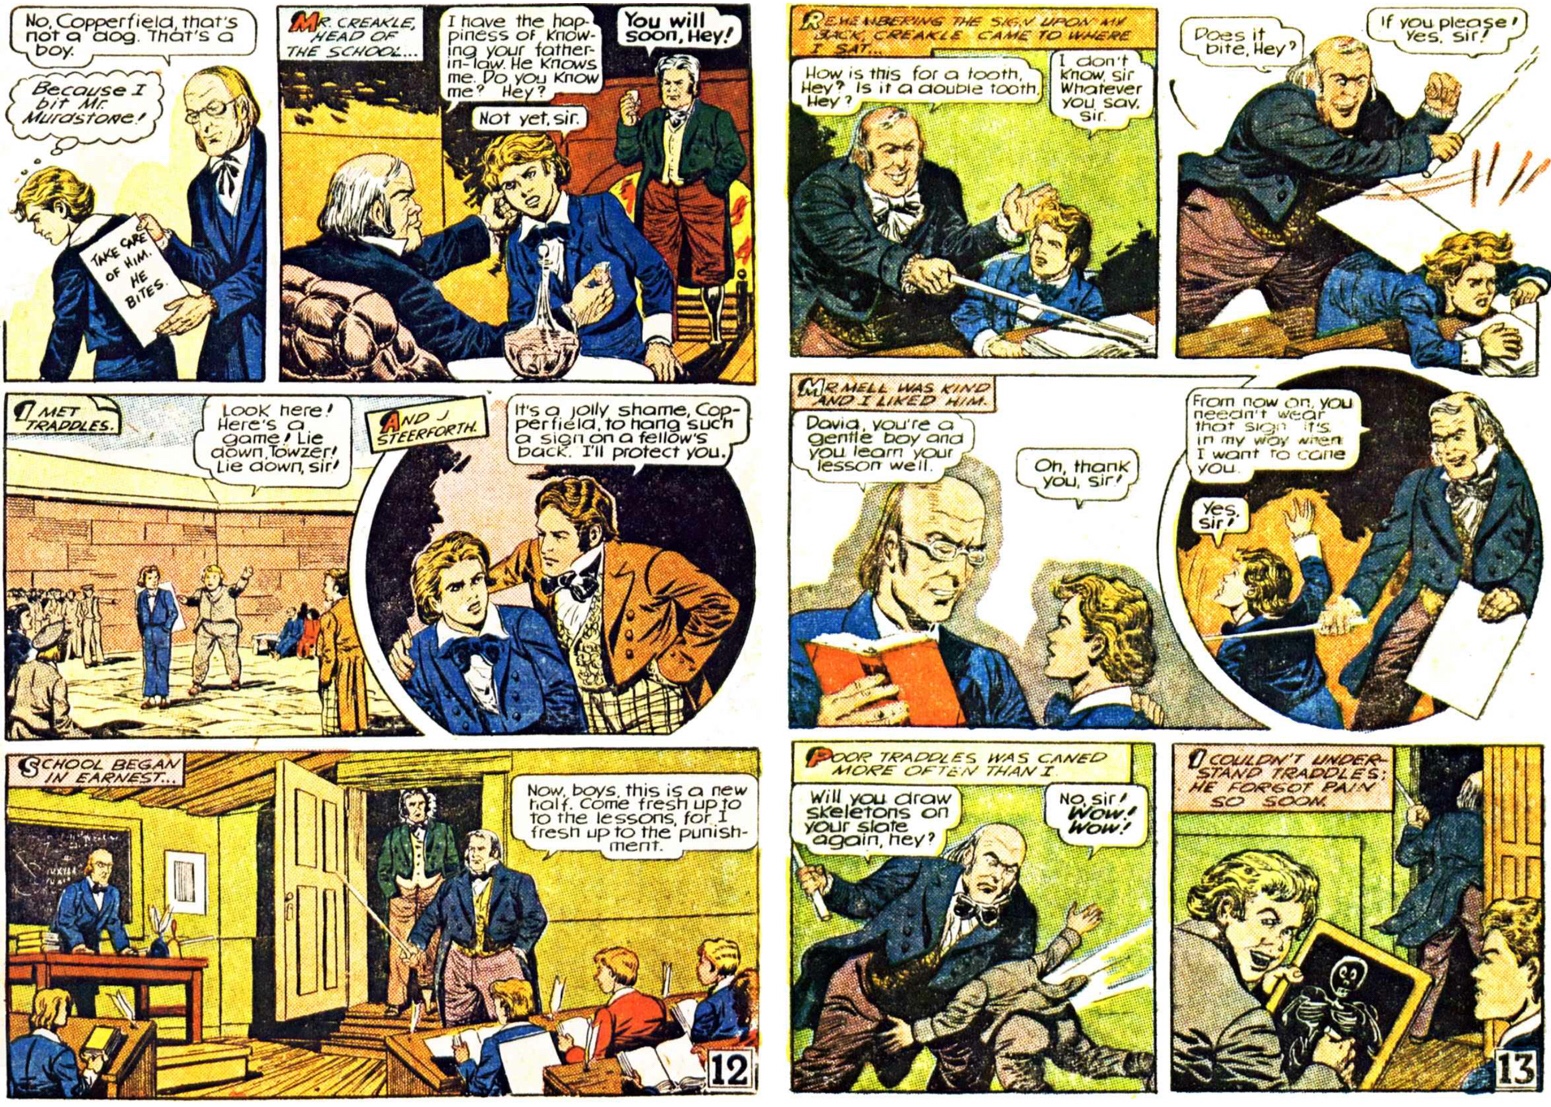 Sidan 12 och 13 ur tidningssida 3 resp. 4 ur den första bilagan med David Copperfield, från 25 maj 1947. ©Gilberton